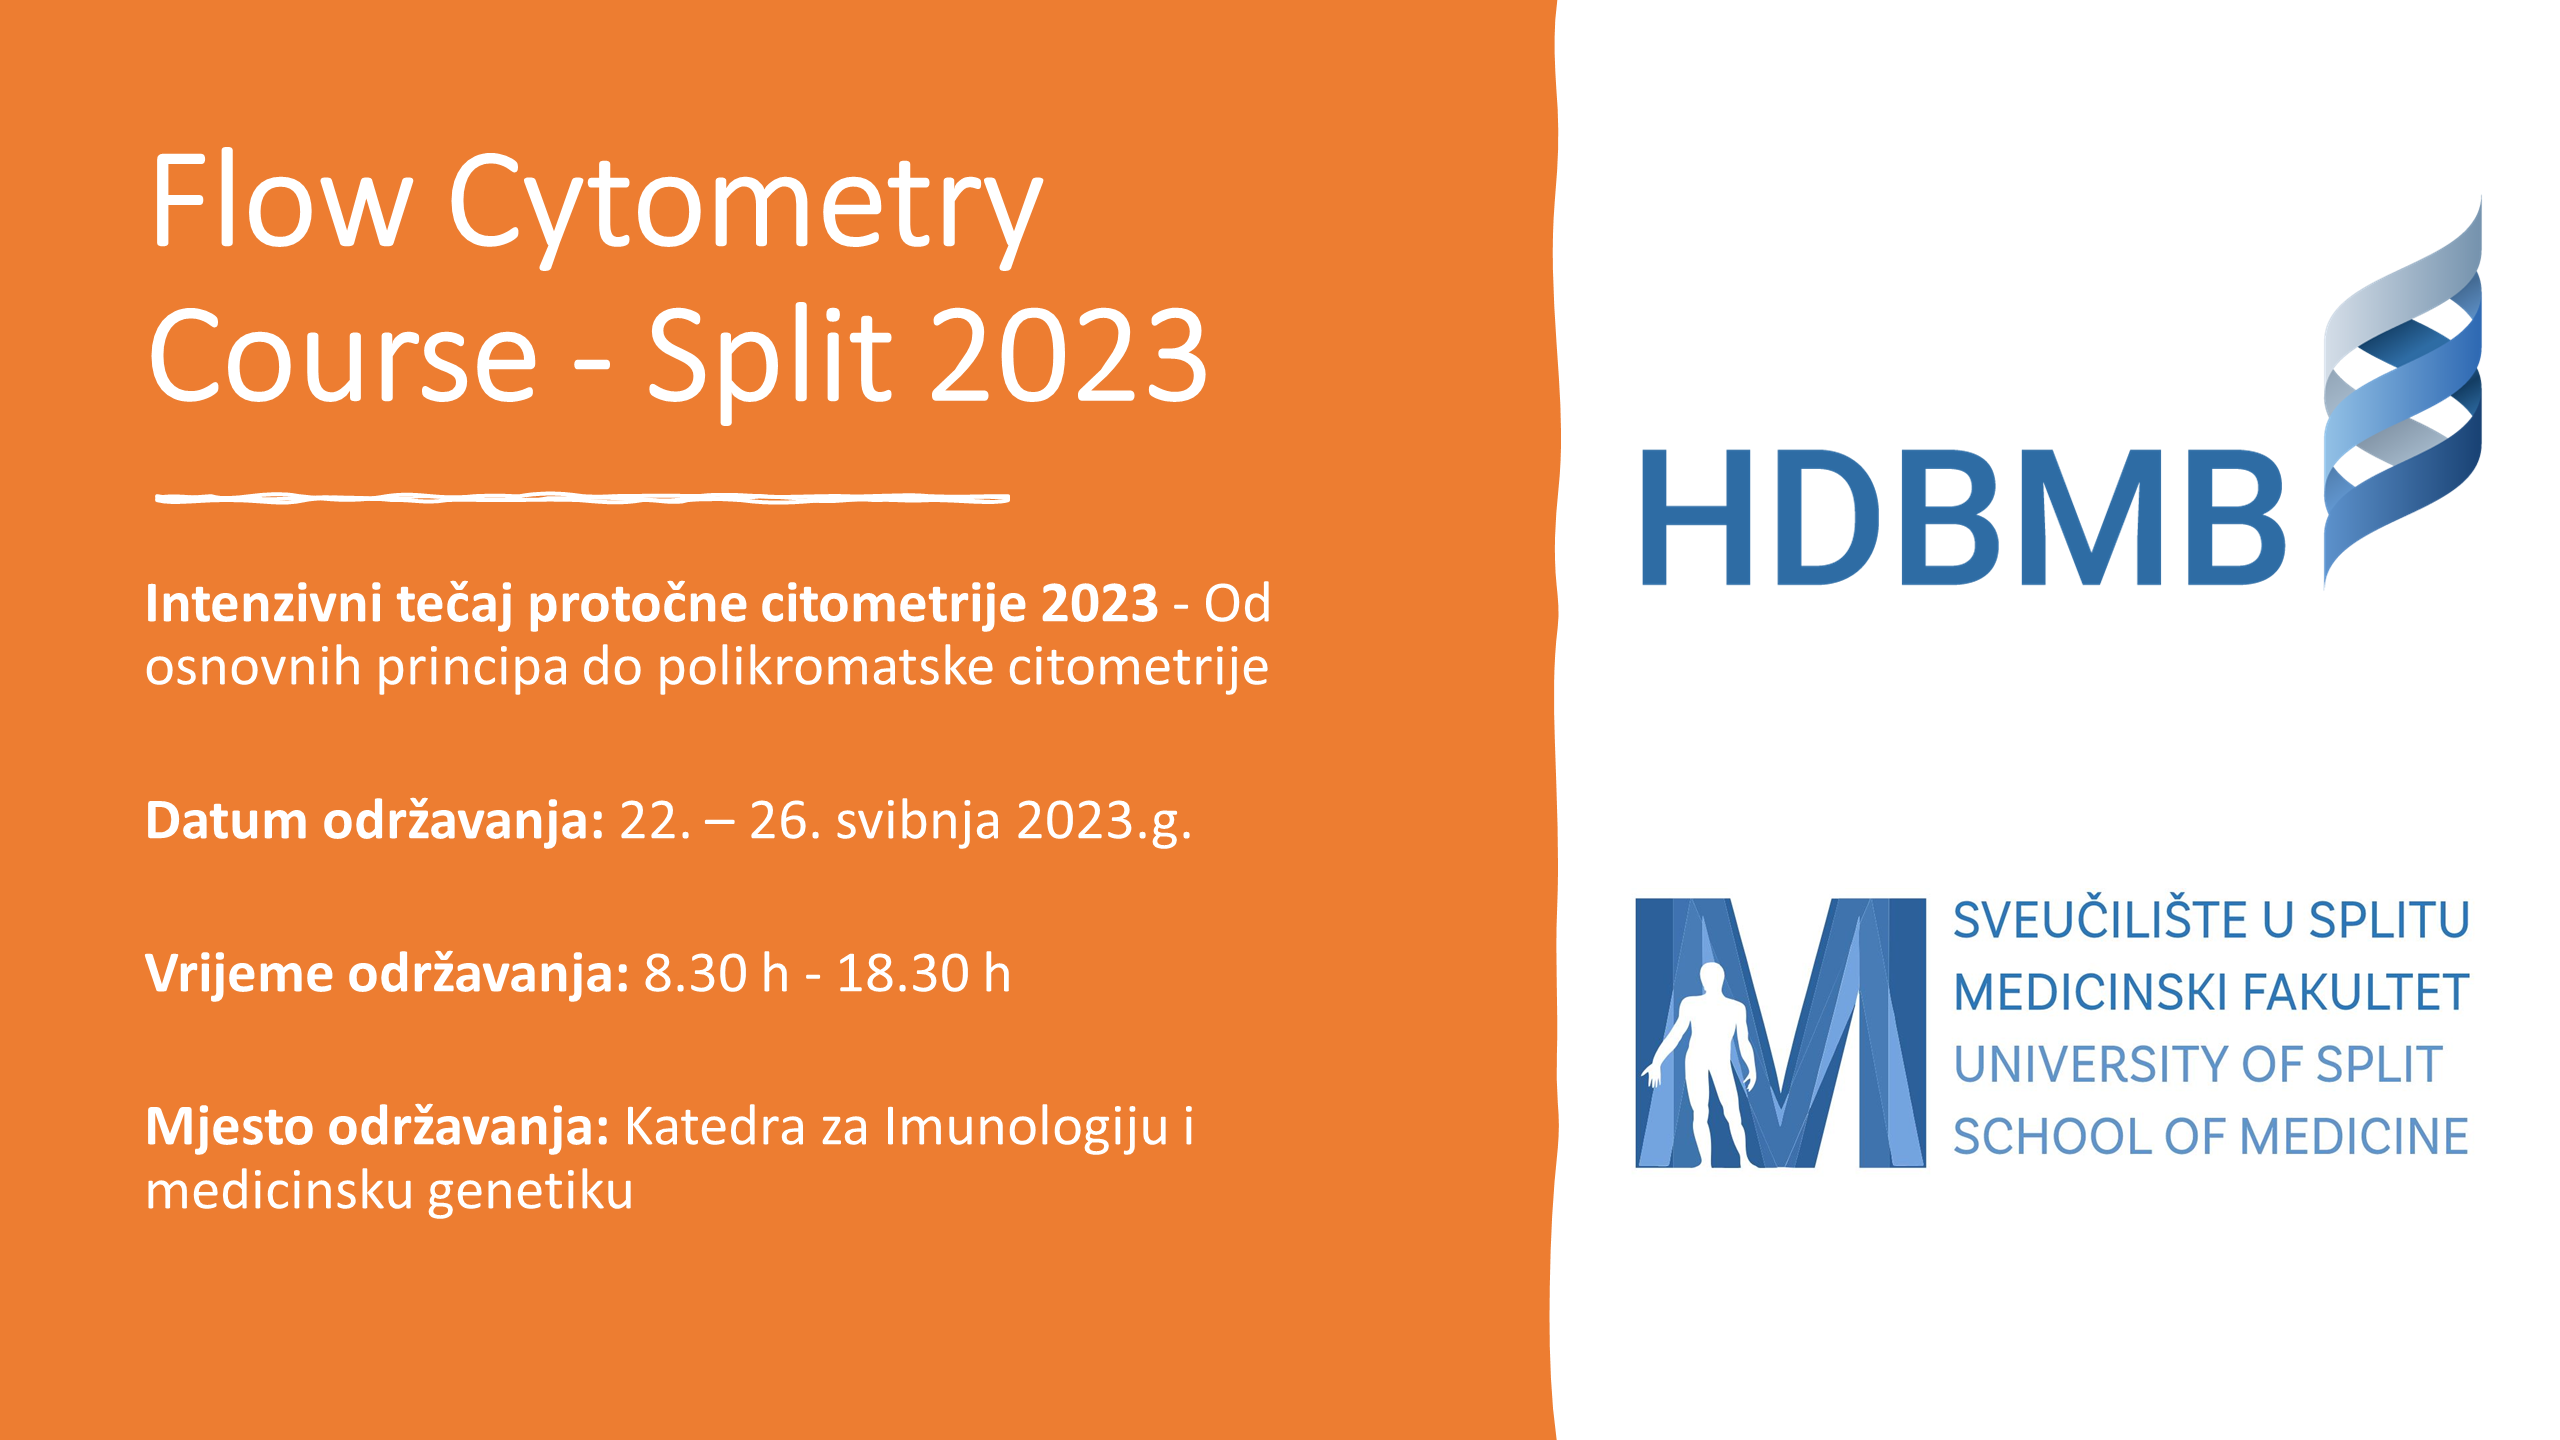 Intenzivni tečaj protočne citometrije 2023 na Katedri za Imunologiju i medicinsku genetiku